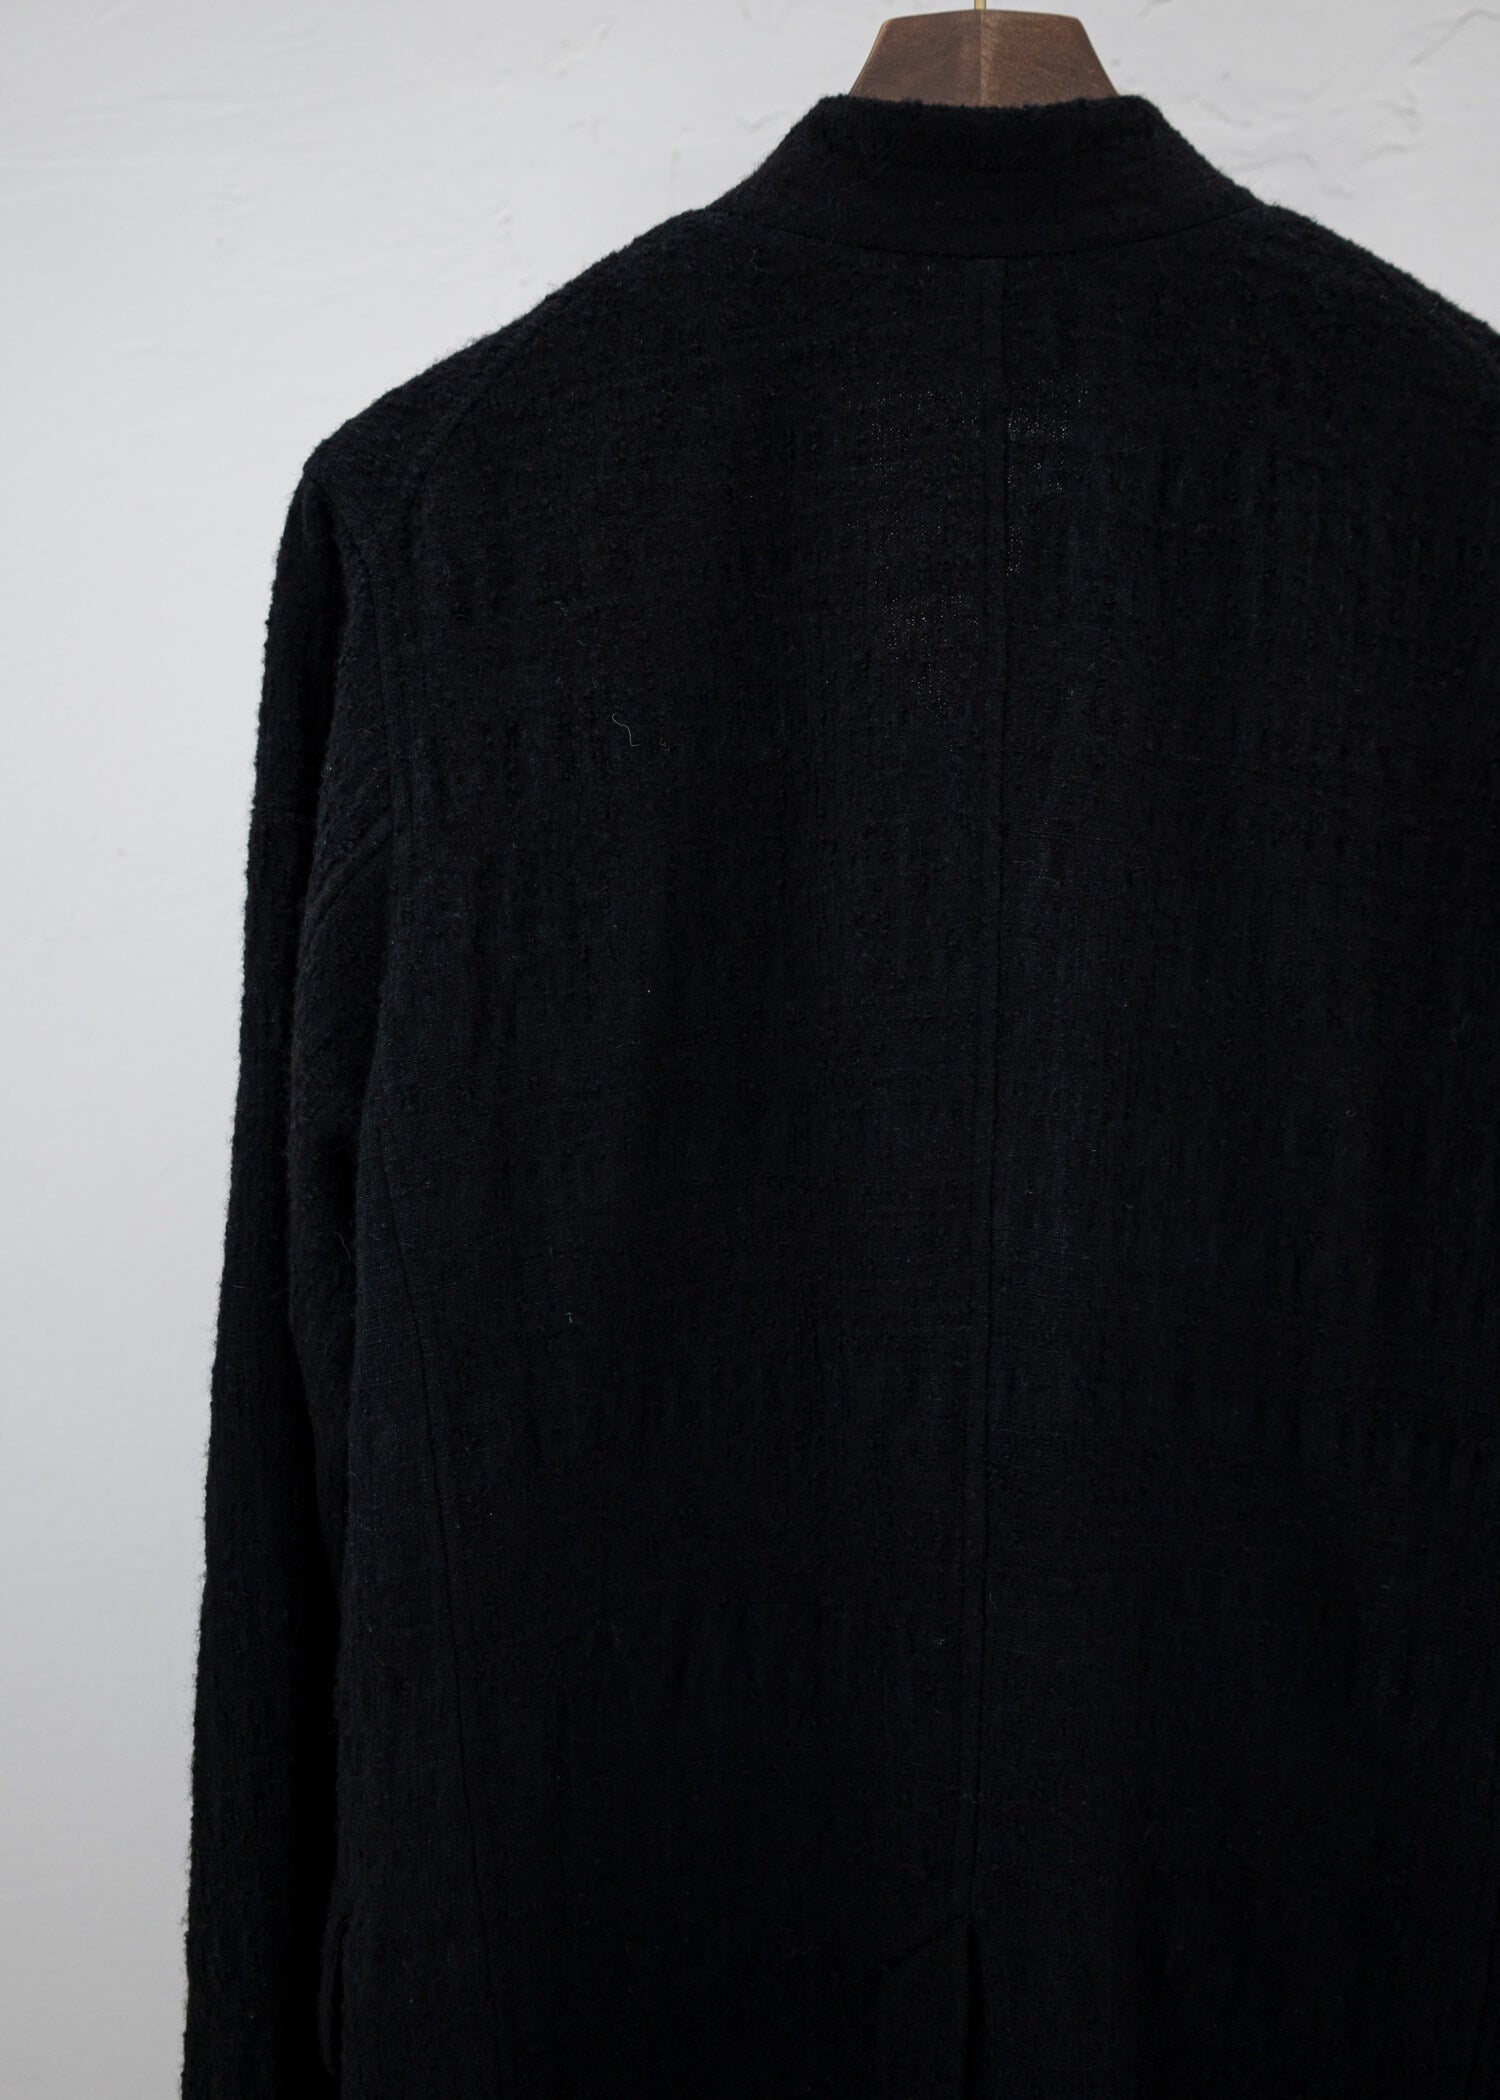 Jurgen Lehl Matocas silk wool stand collar jacket